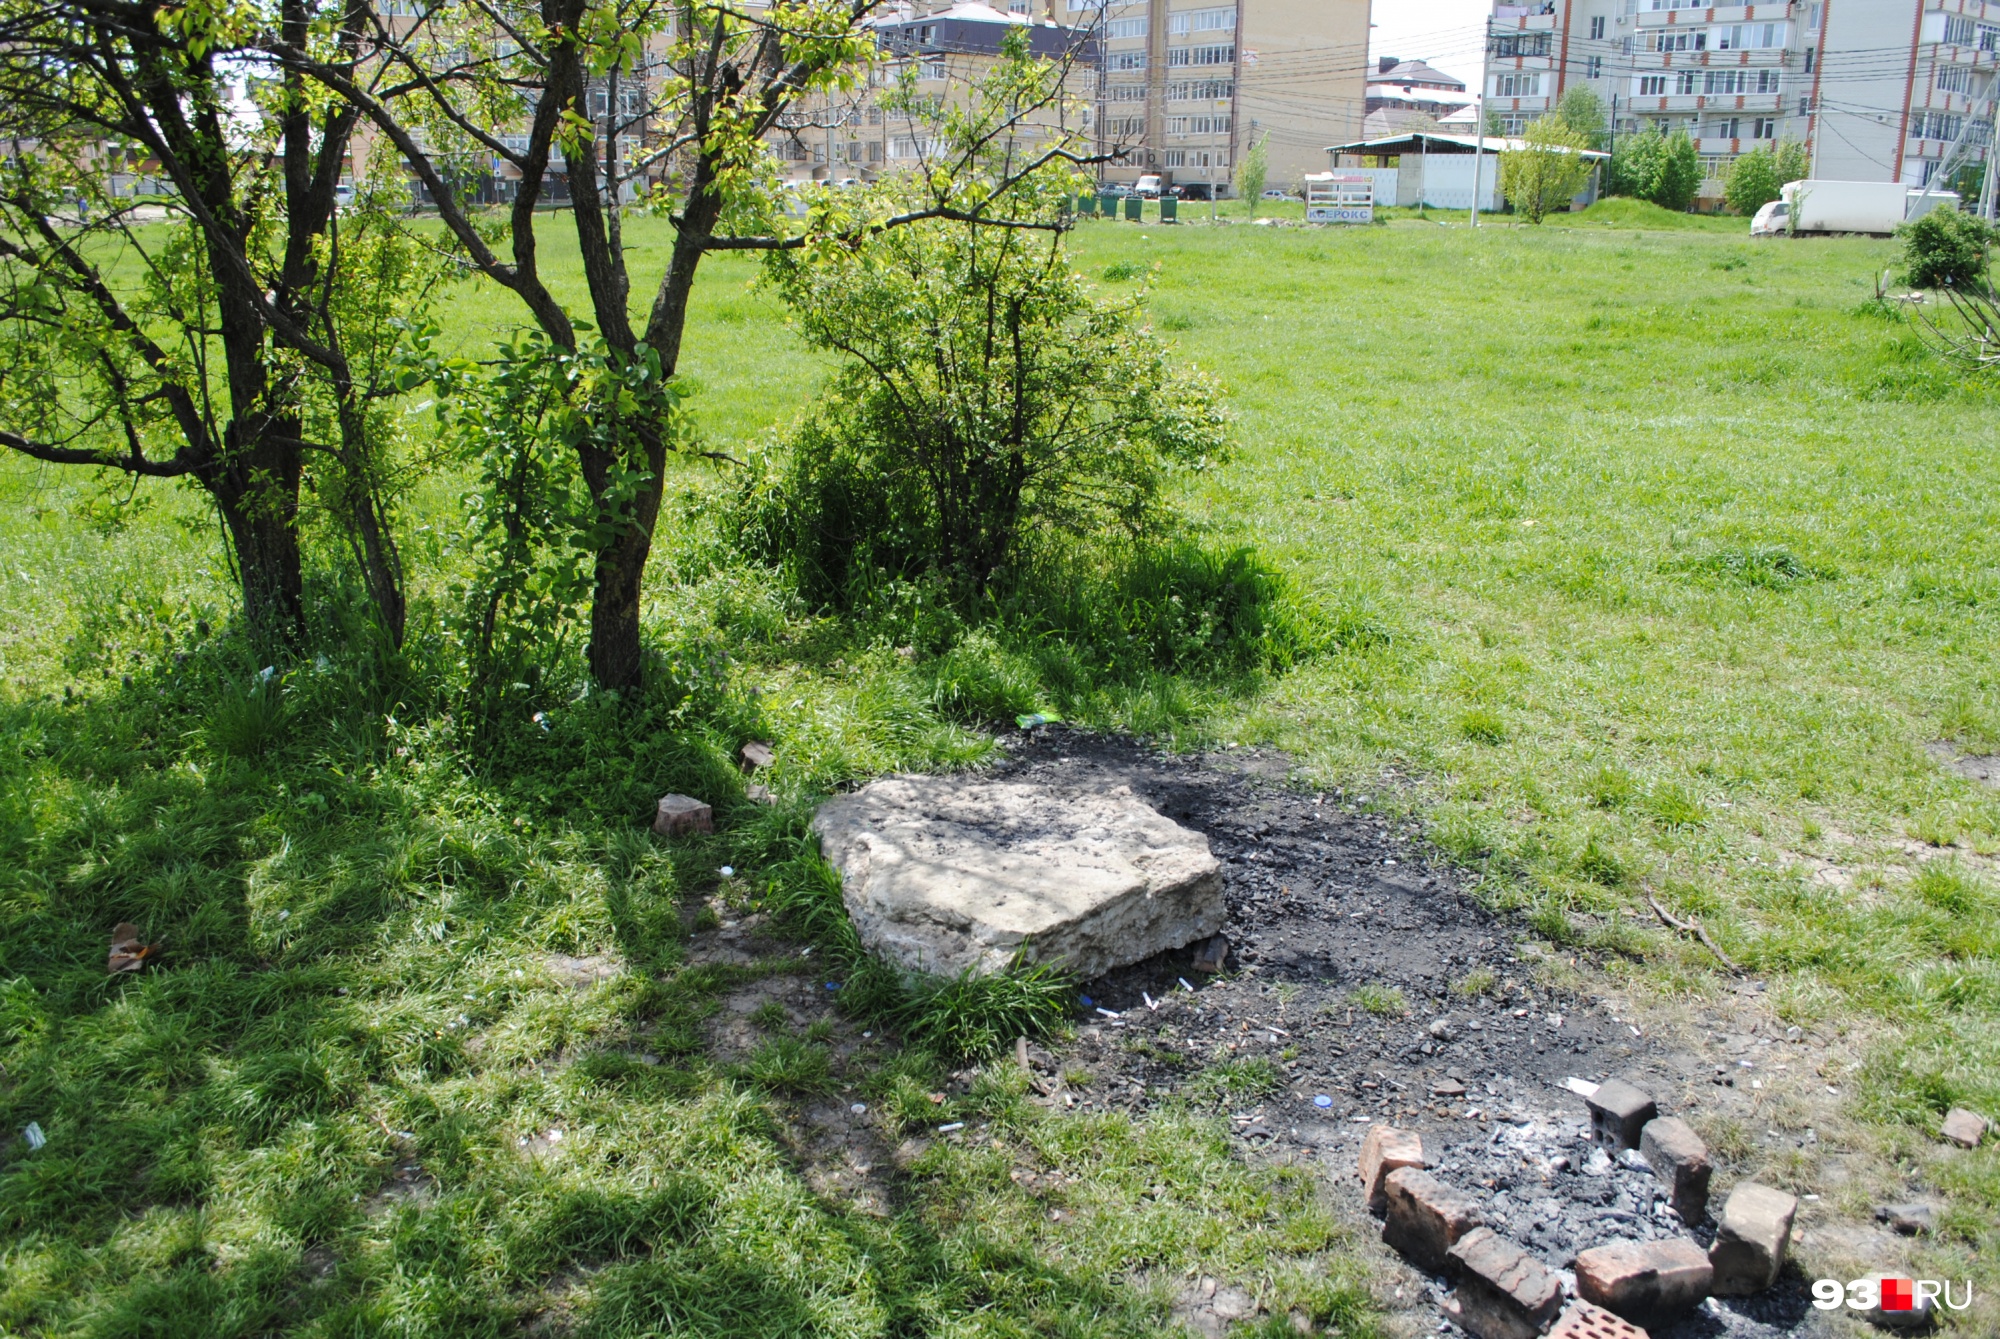 По словам местных, именно этот камень заложил в основание будущей школы мэр Краснодара Владимир Евланов